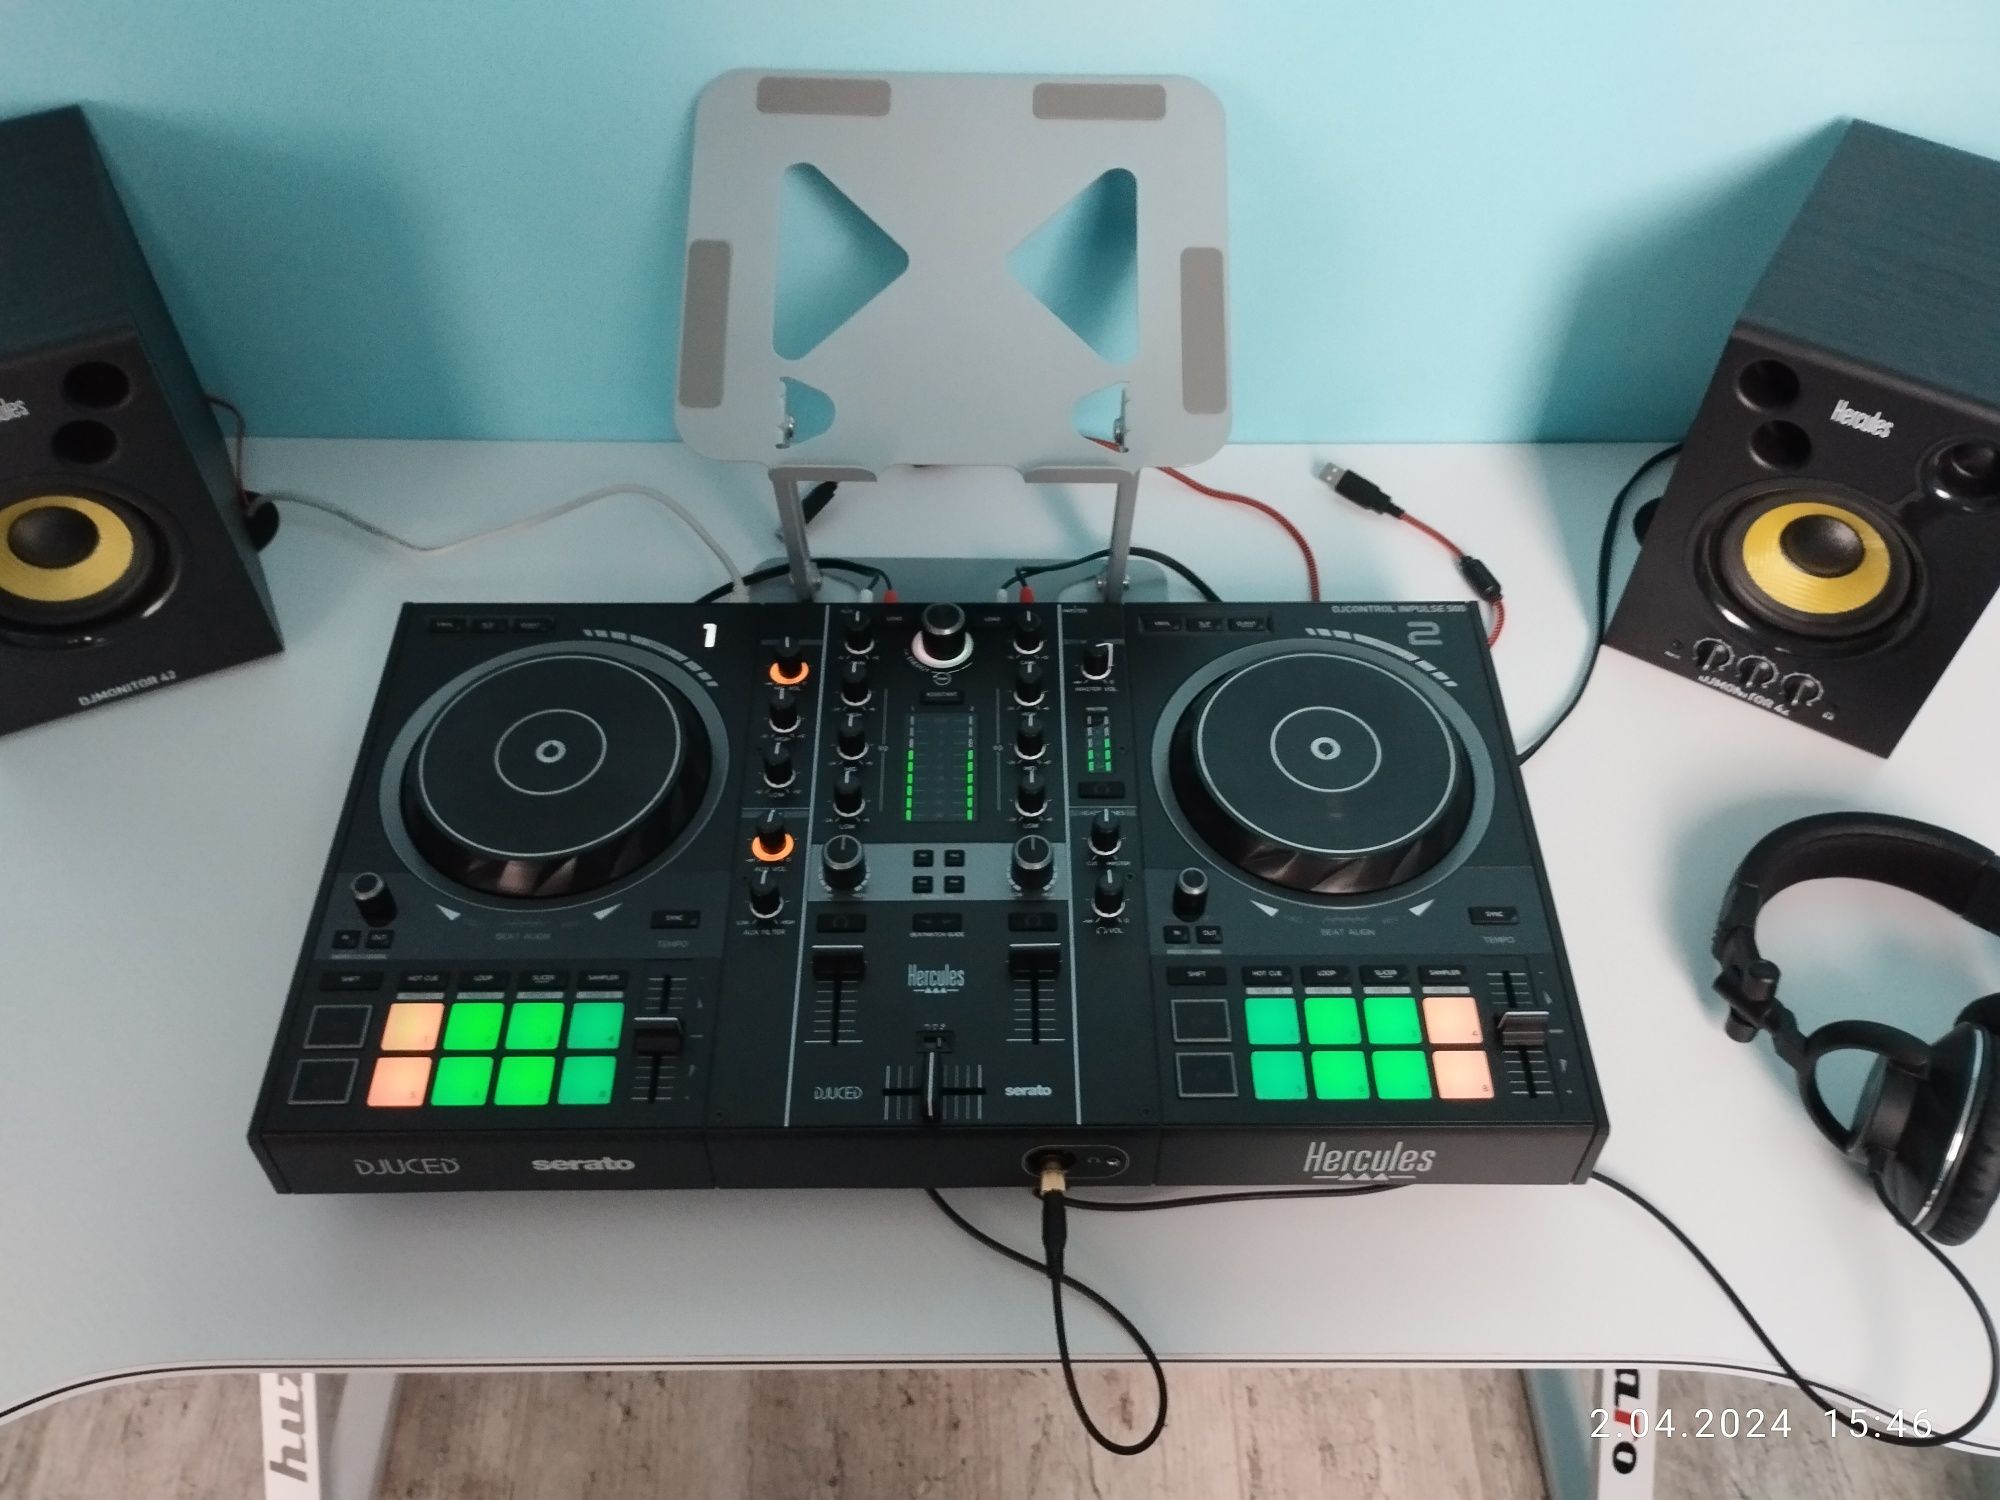 Zestaw Hercules - DJcontrol Inpulse 500 + DJmonitor 42 + HDP DJ60